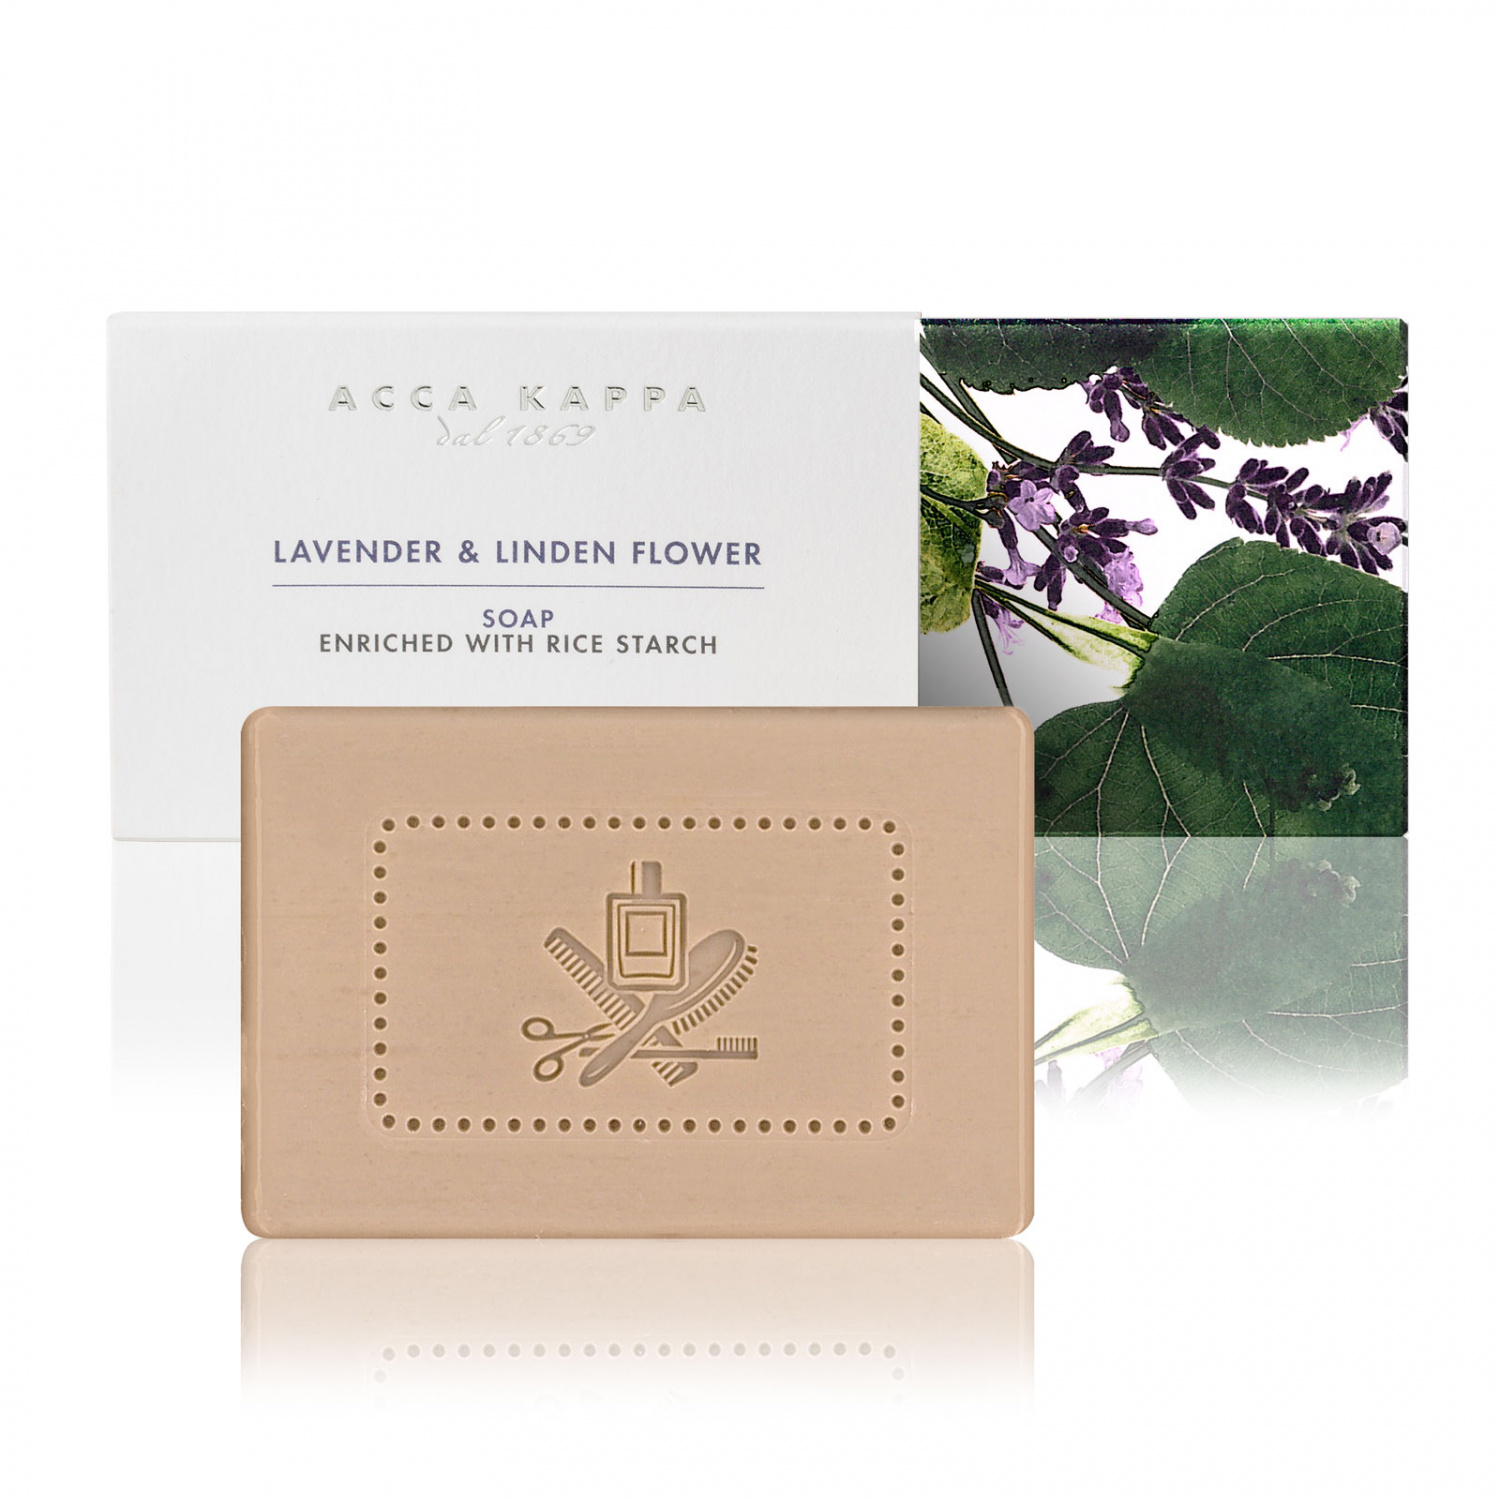 Acca Kappa Lavender & Linden Flower Soap 150g - интернет-магазин профессиональной косметики Spadream, изображение 38850